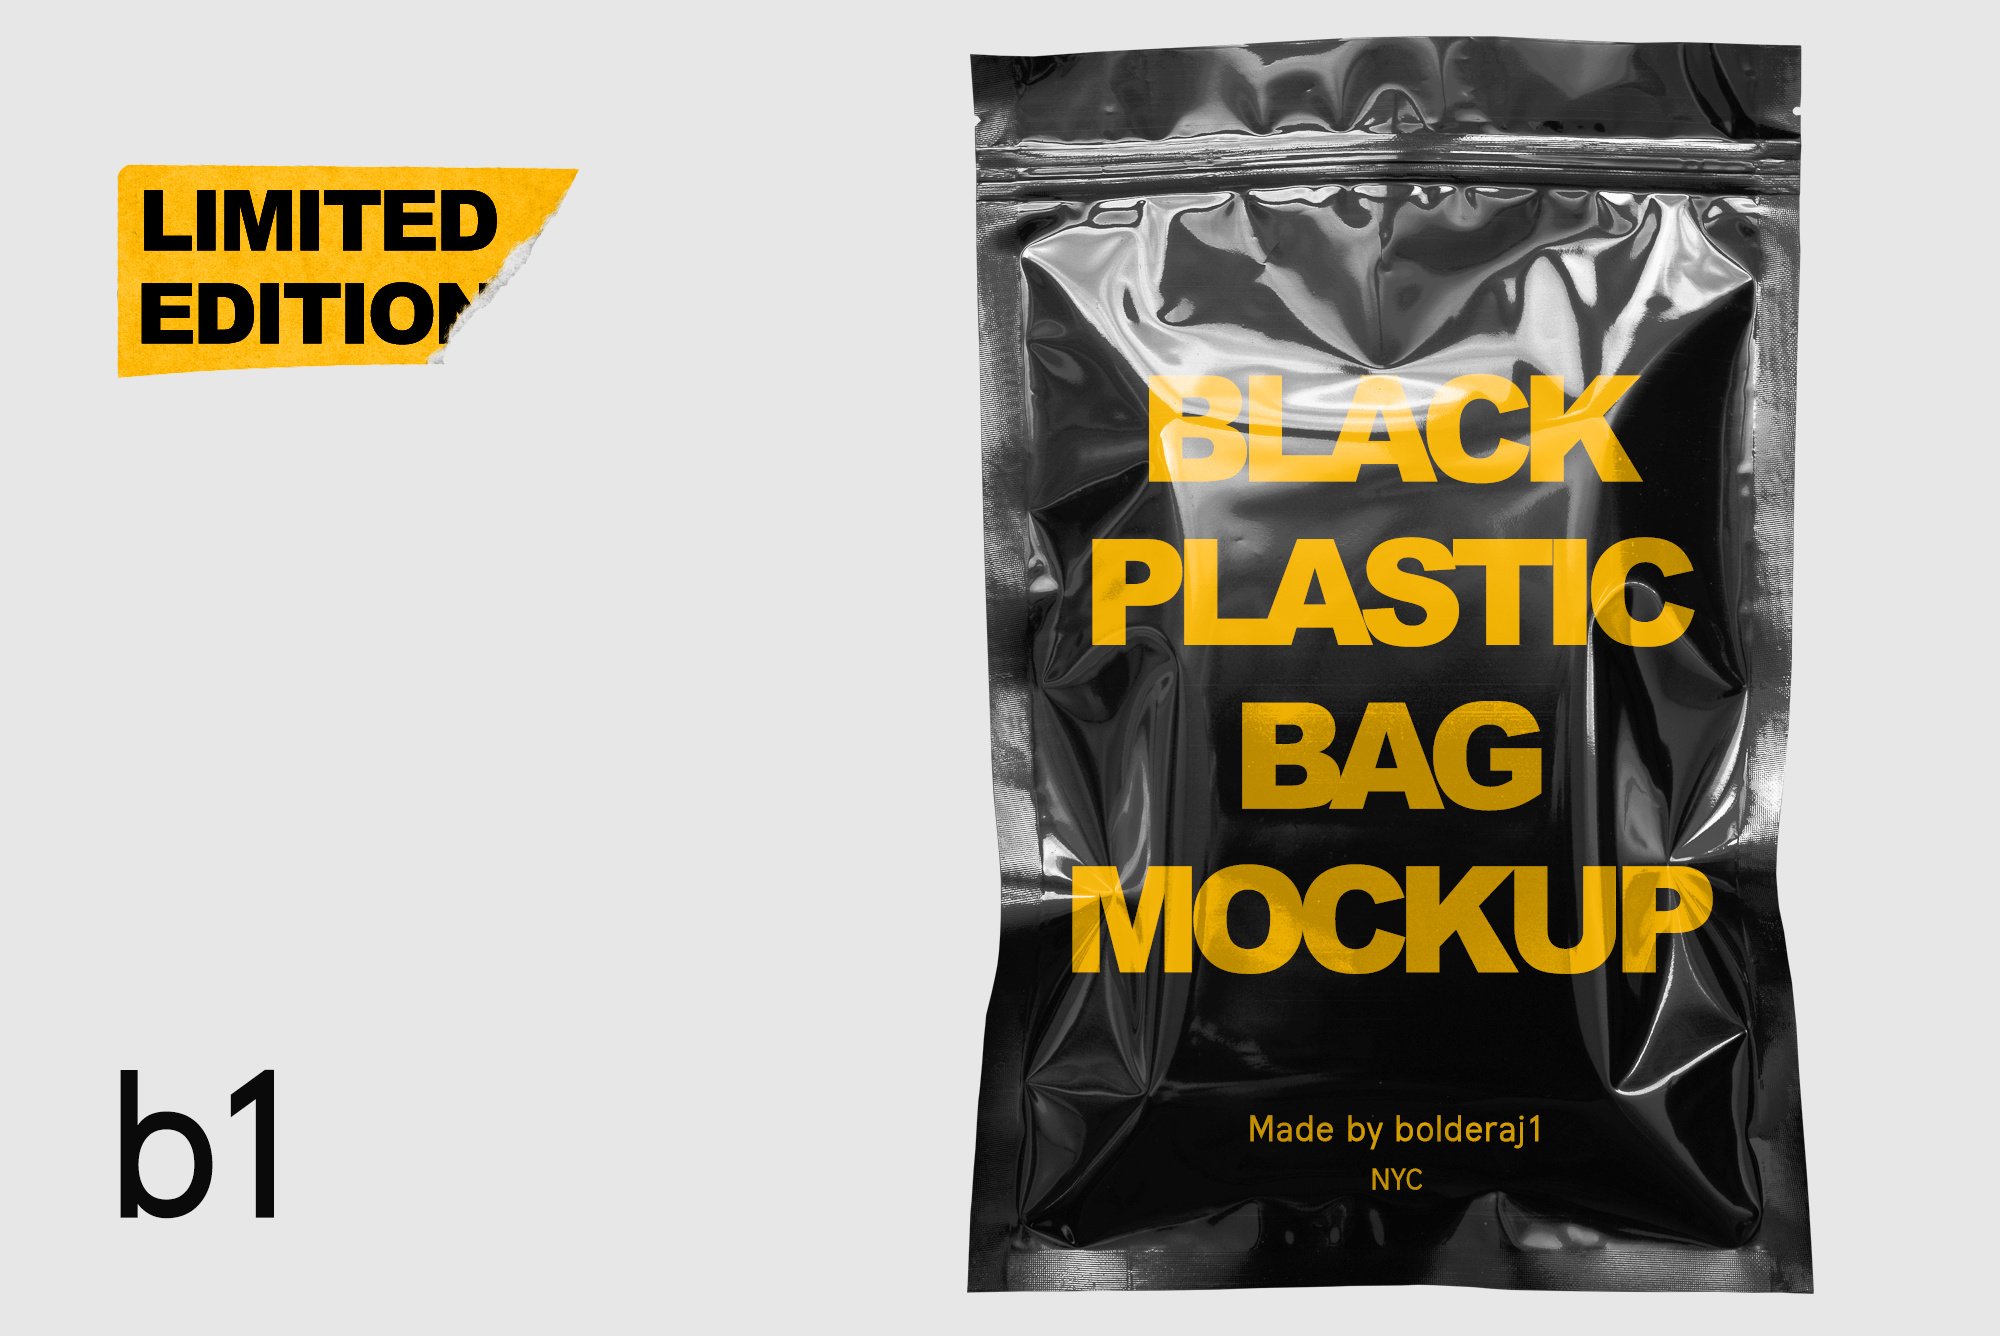 Download Black plastic bag mockup by Mockup5 on Dribbble